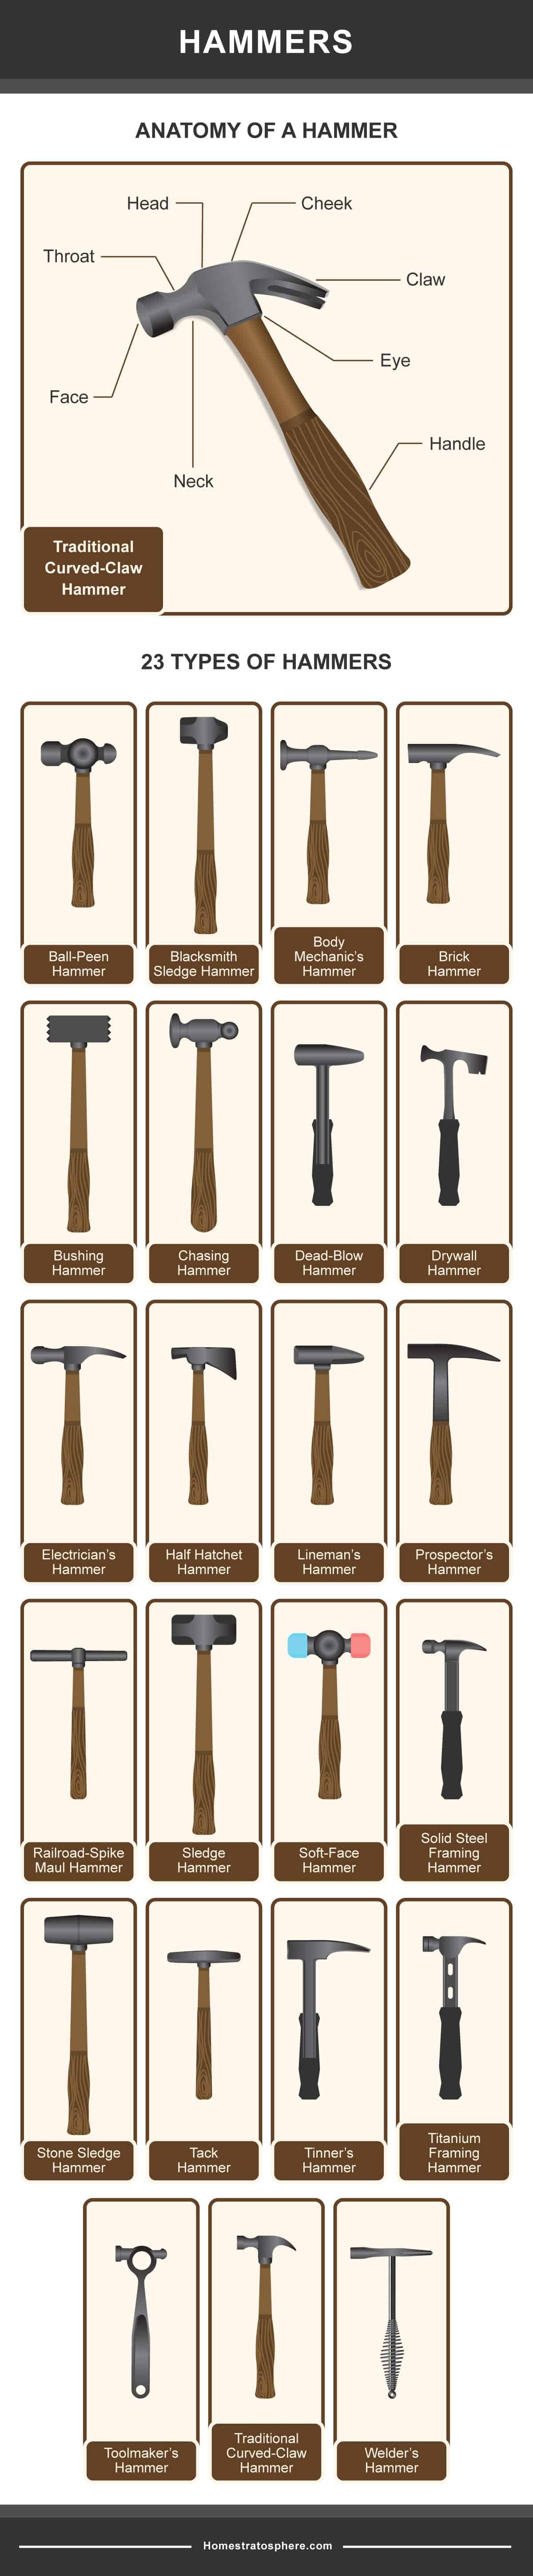 图表显示不同类型的锤子。